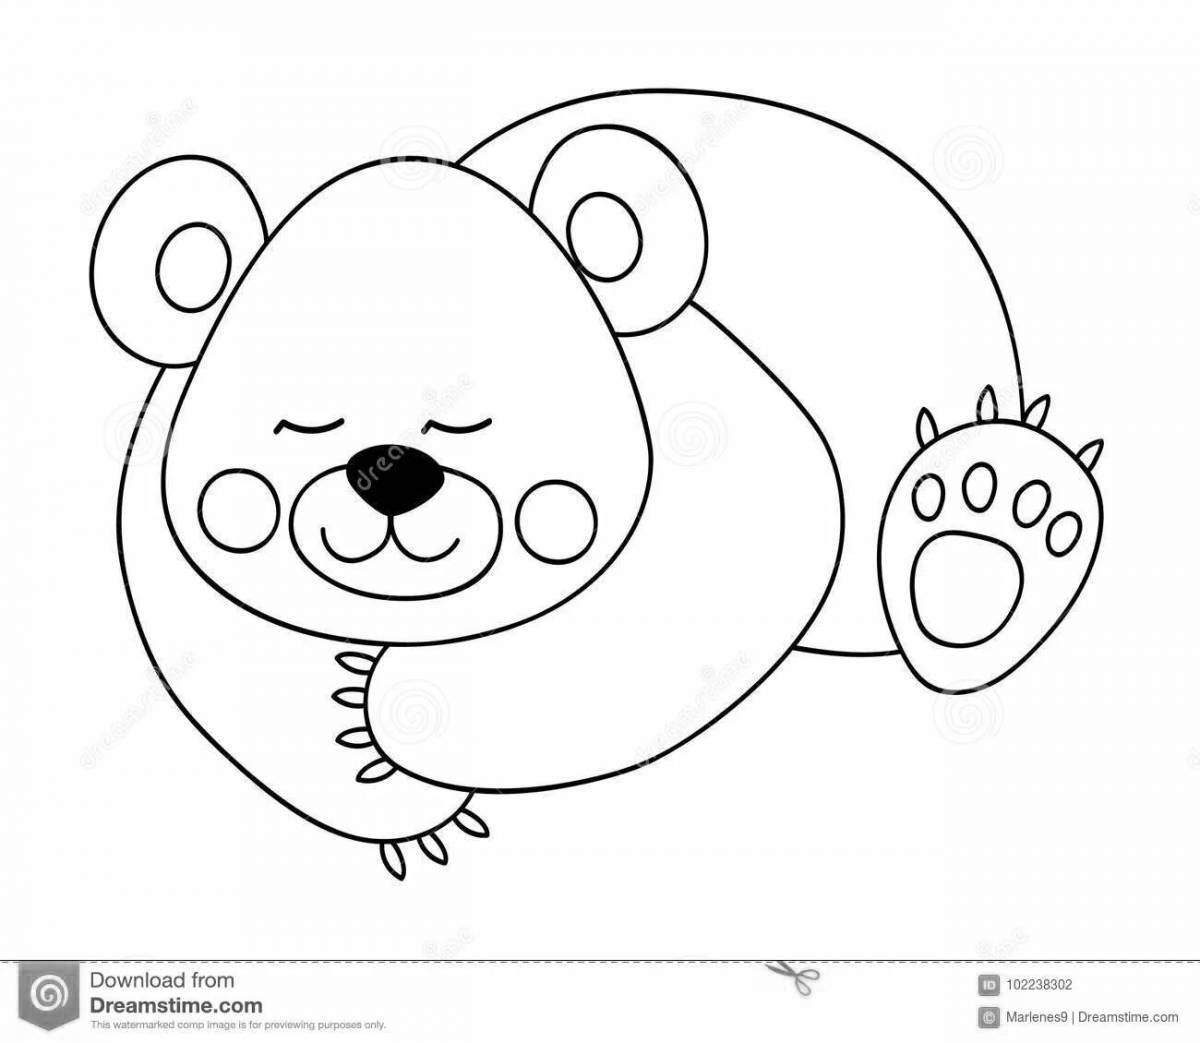 Восхитительная раскраска «медвежья берлога» для детей 3-4 лет